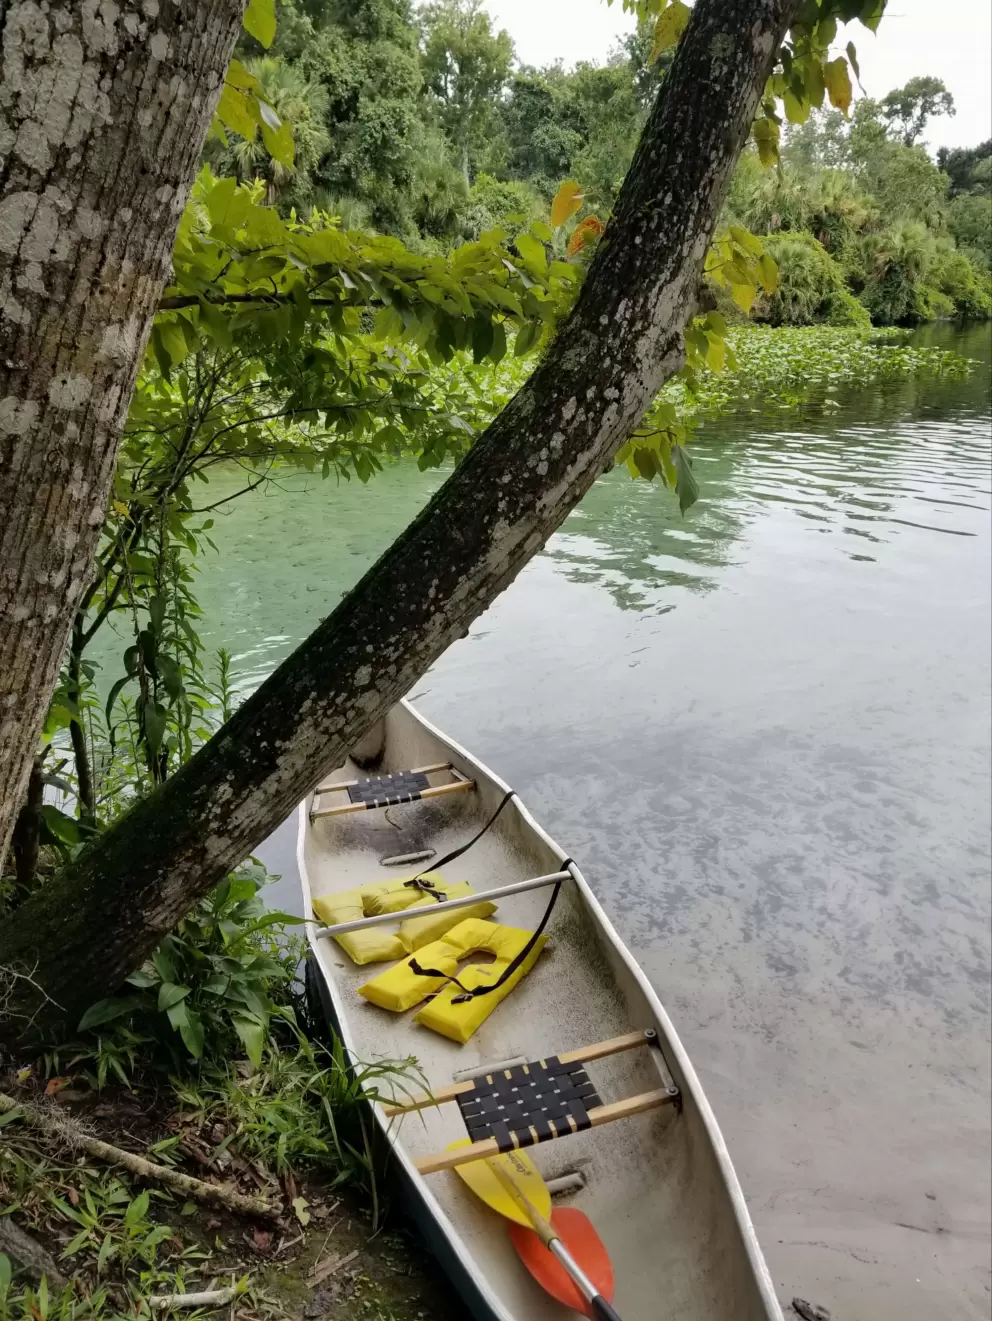 Canoe for rent.